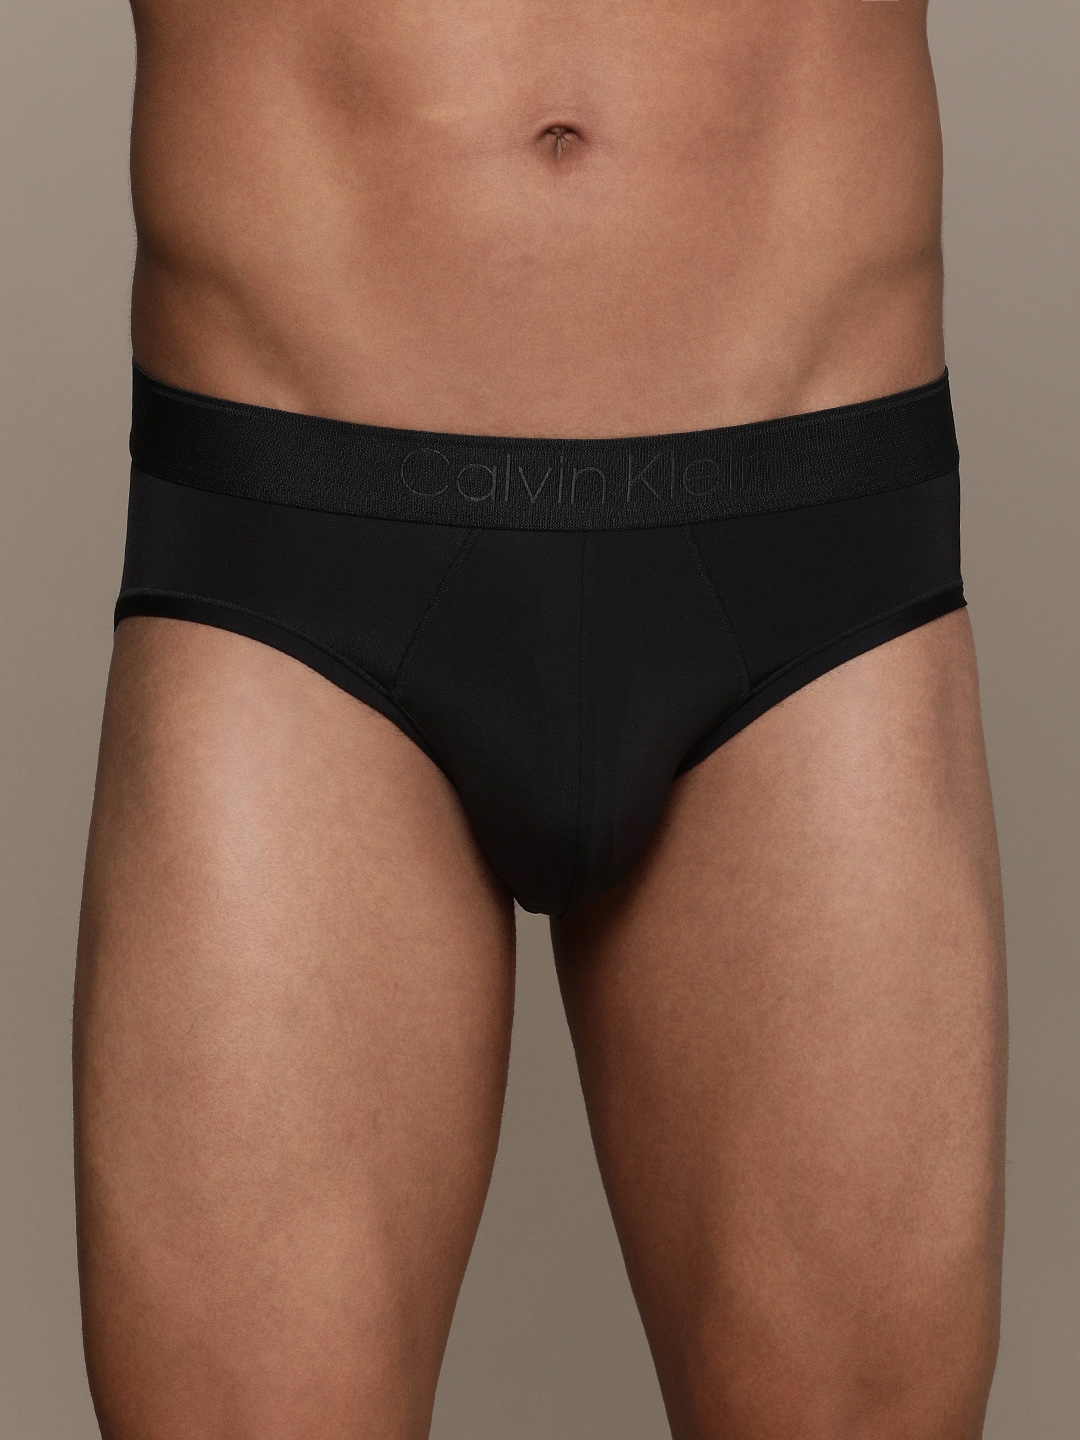 Buy Calvin Klein Underwear Men Briefs NB3633XAT ROUGE - Briefs for